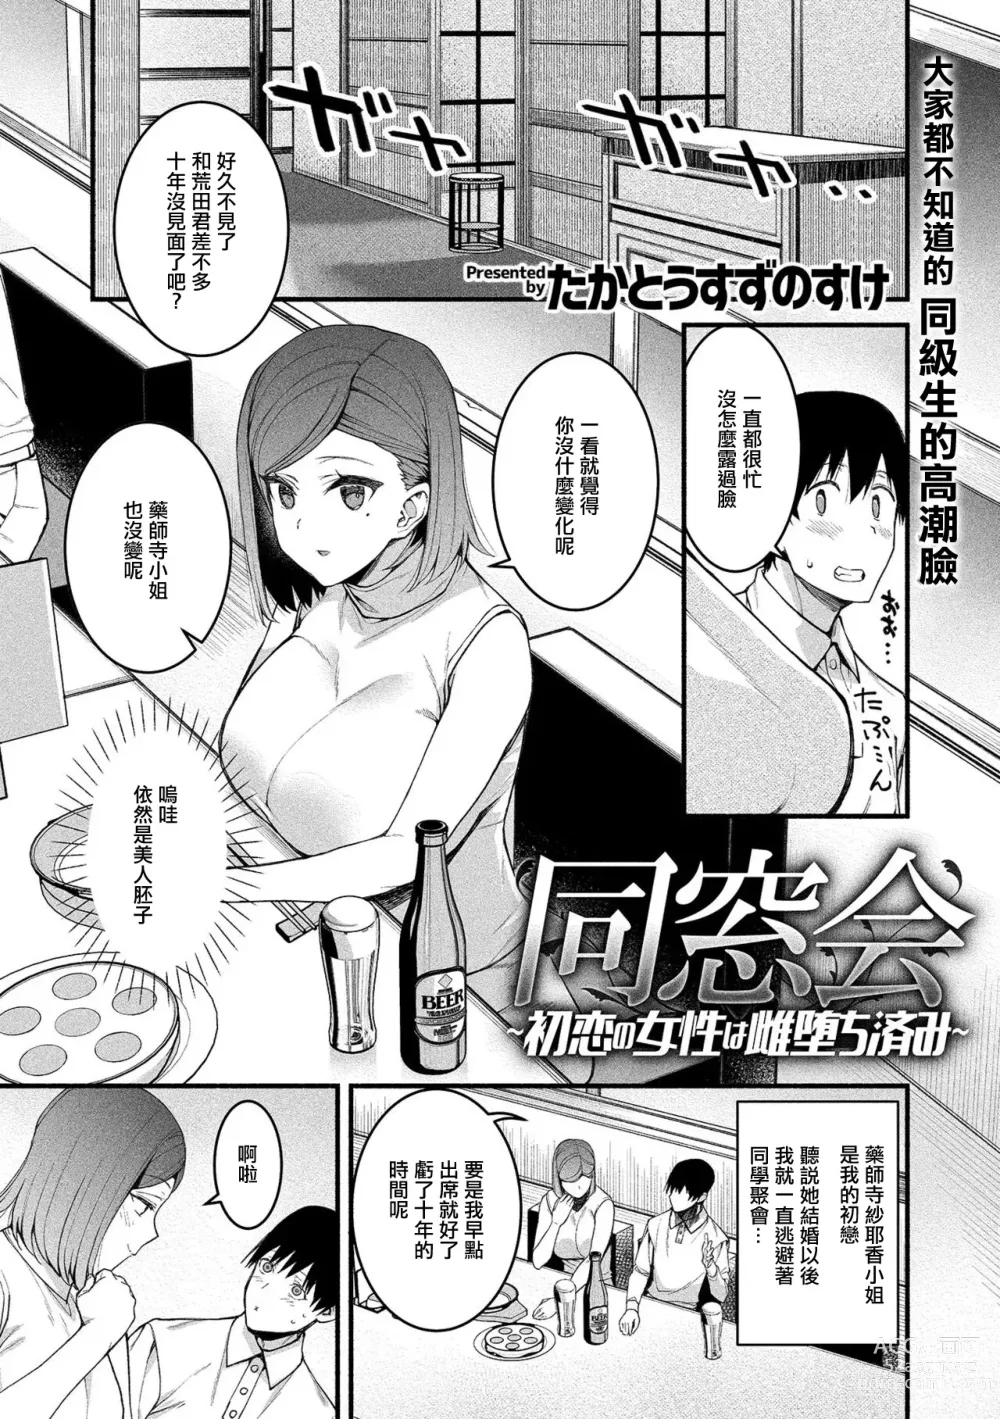 Page 2 of manga Dousoukai ~Hatsukoi no Josei wa Mesu Ochizumi~